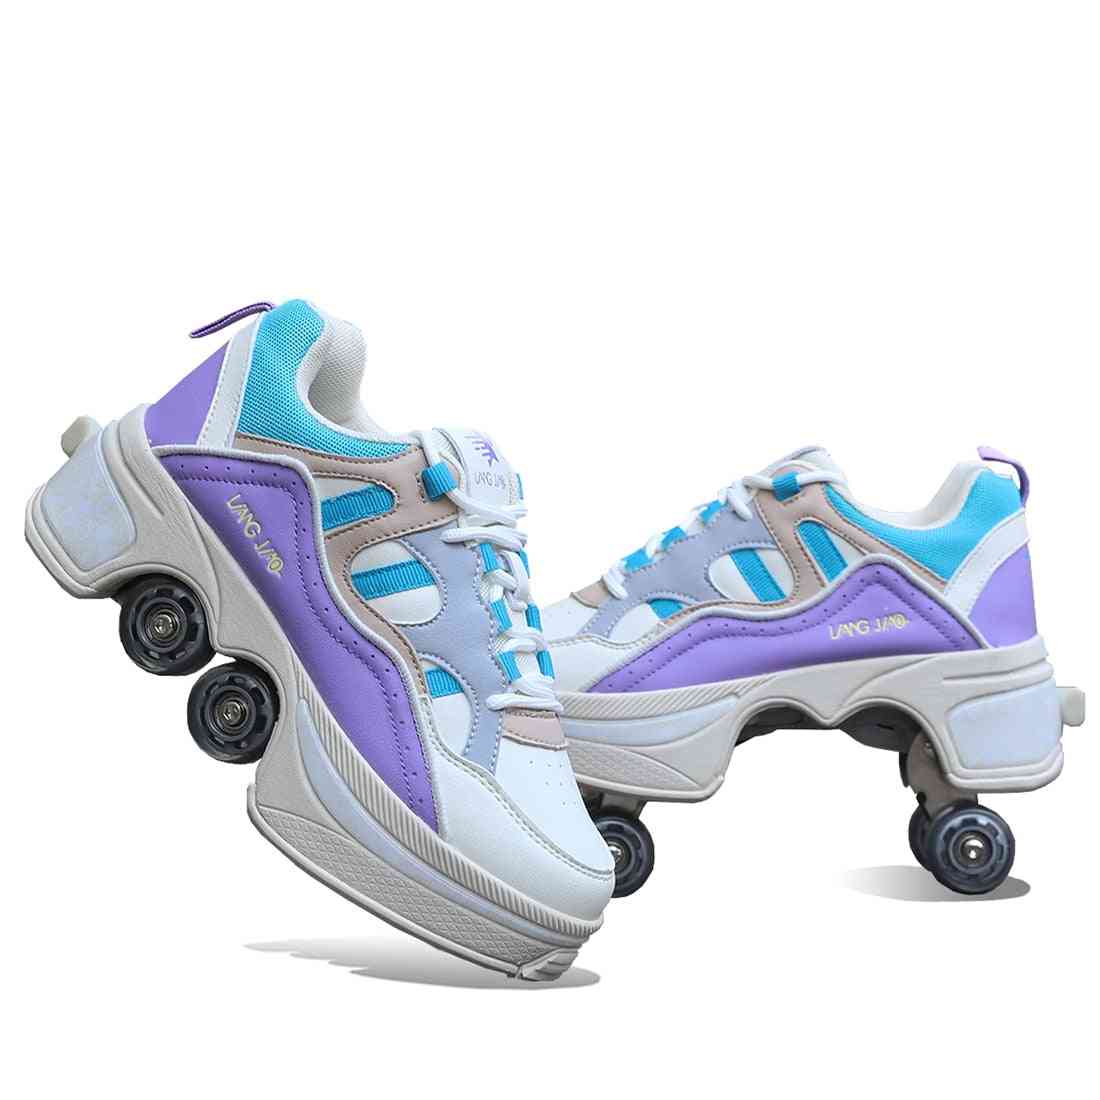 Deform Wheel Roller Skate Shoes